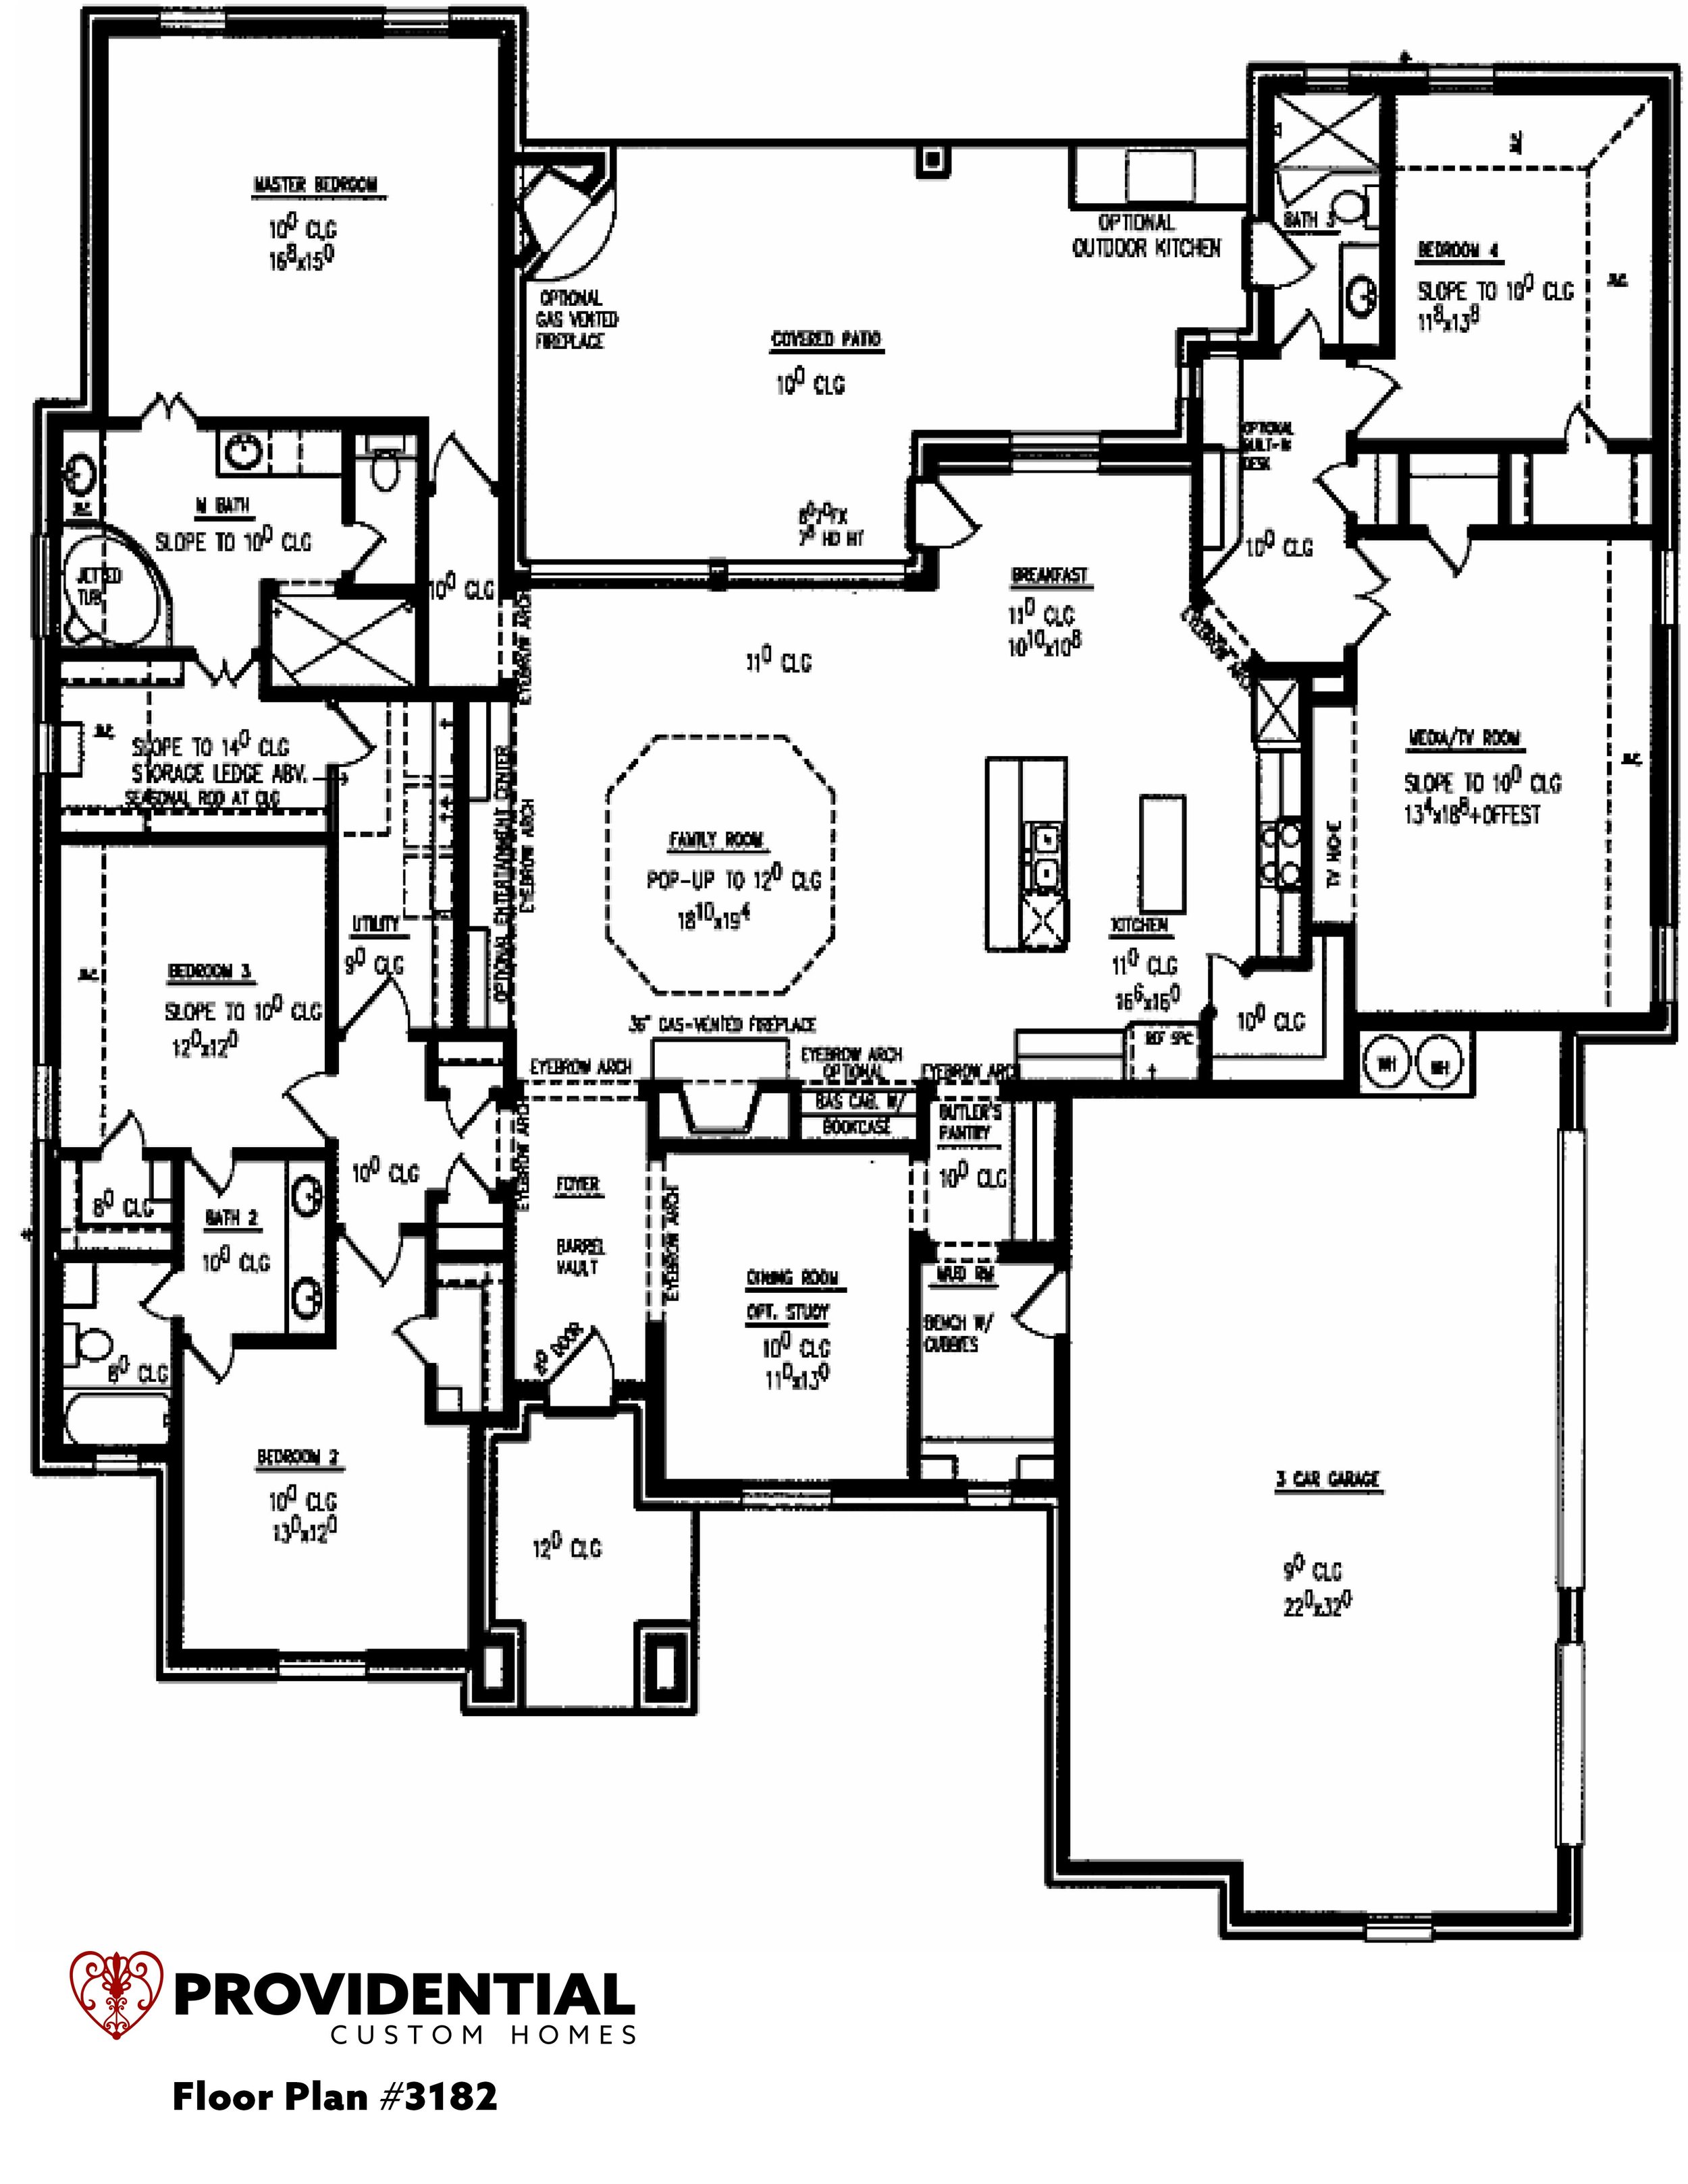 Custom Home Floor plans - 3000 sq ft — Providential Custom Homes